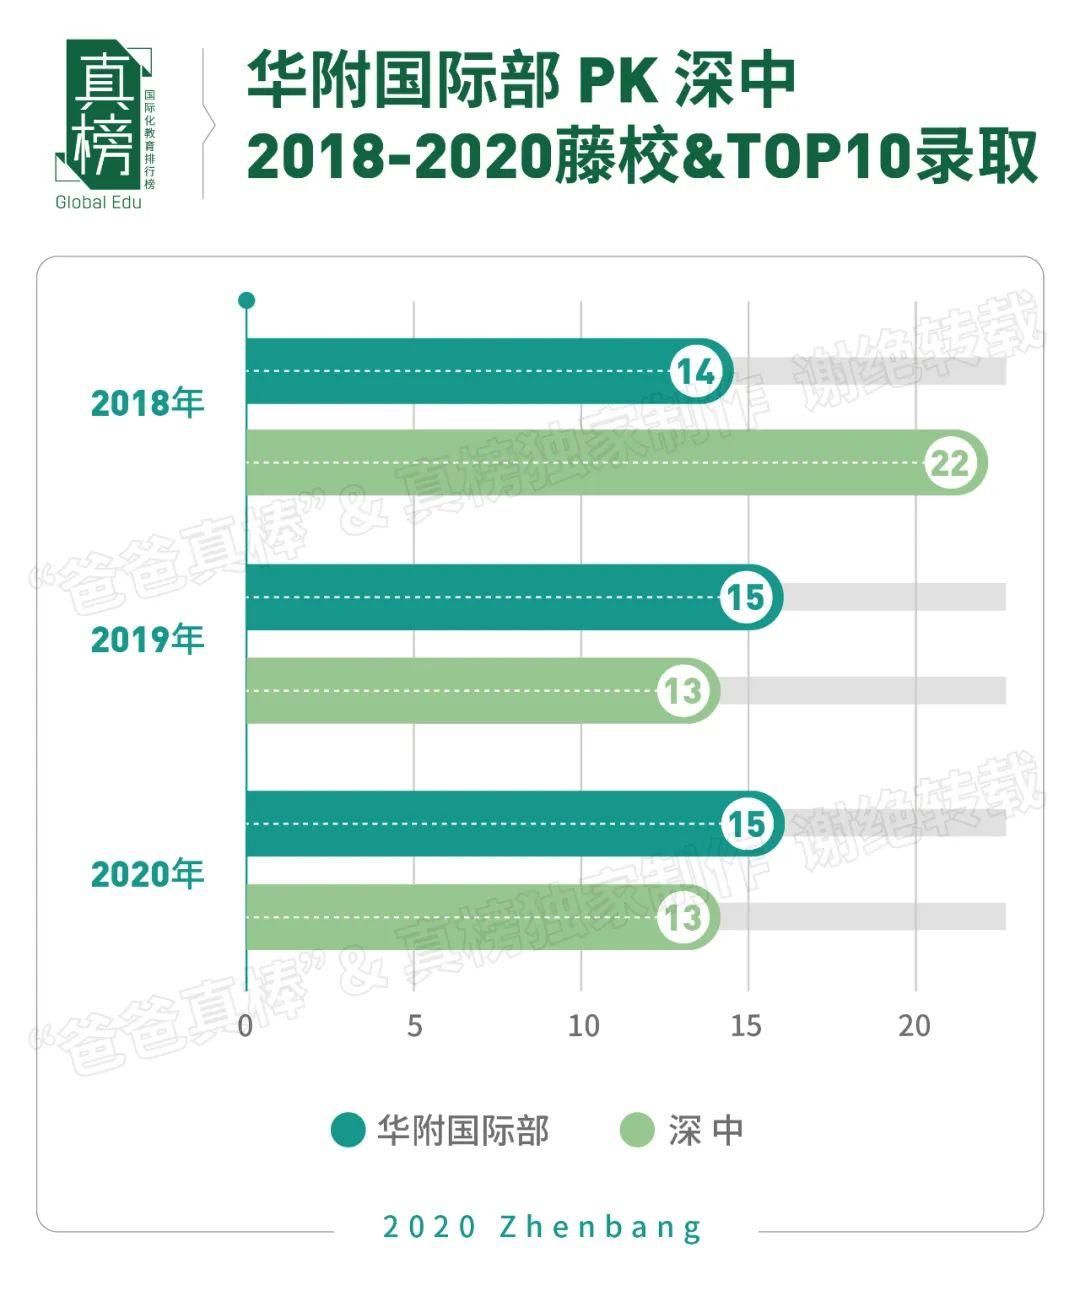 真榜*发榜: 2020年广深顶尖大学录取第一名校是这所学校  数据 深圳国际交流学院 第13张